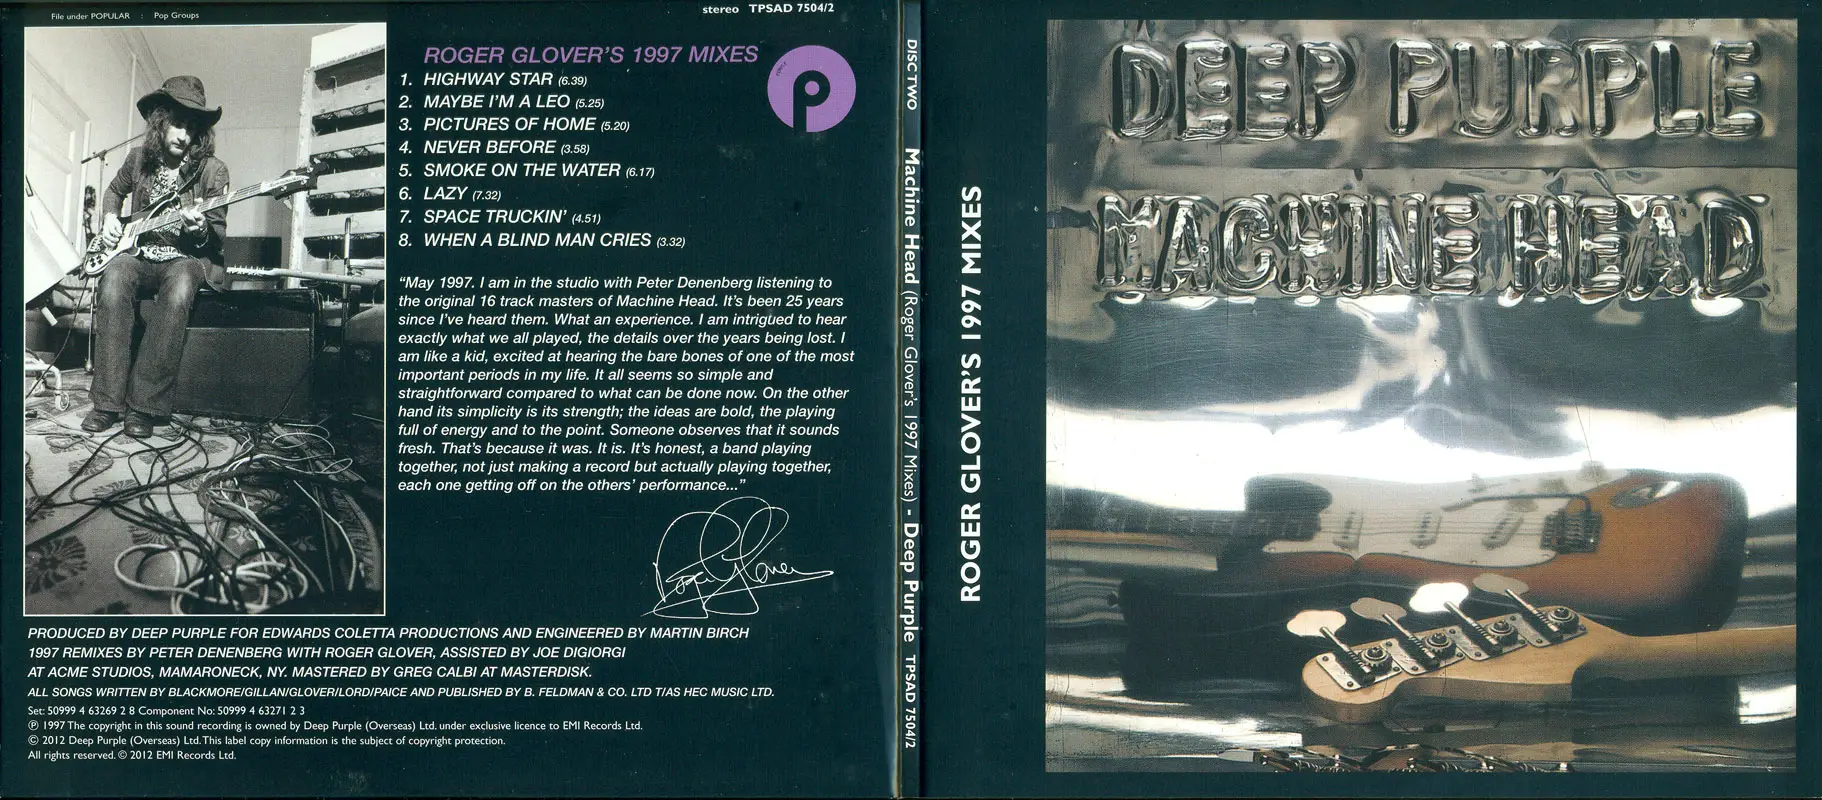 Дип перпл машин. 1972 Machine head обложка. Deep Purple Machine head 1972 обложка. Deep Purple Machine head CD обложка. Deep Purple: Machine head (40th Anniversary Edition) (180g) (LP + 7").